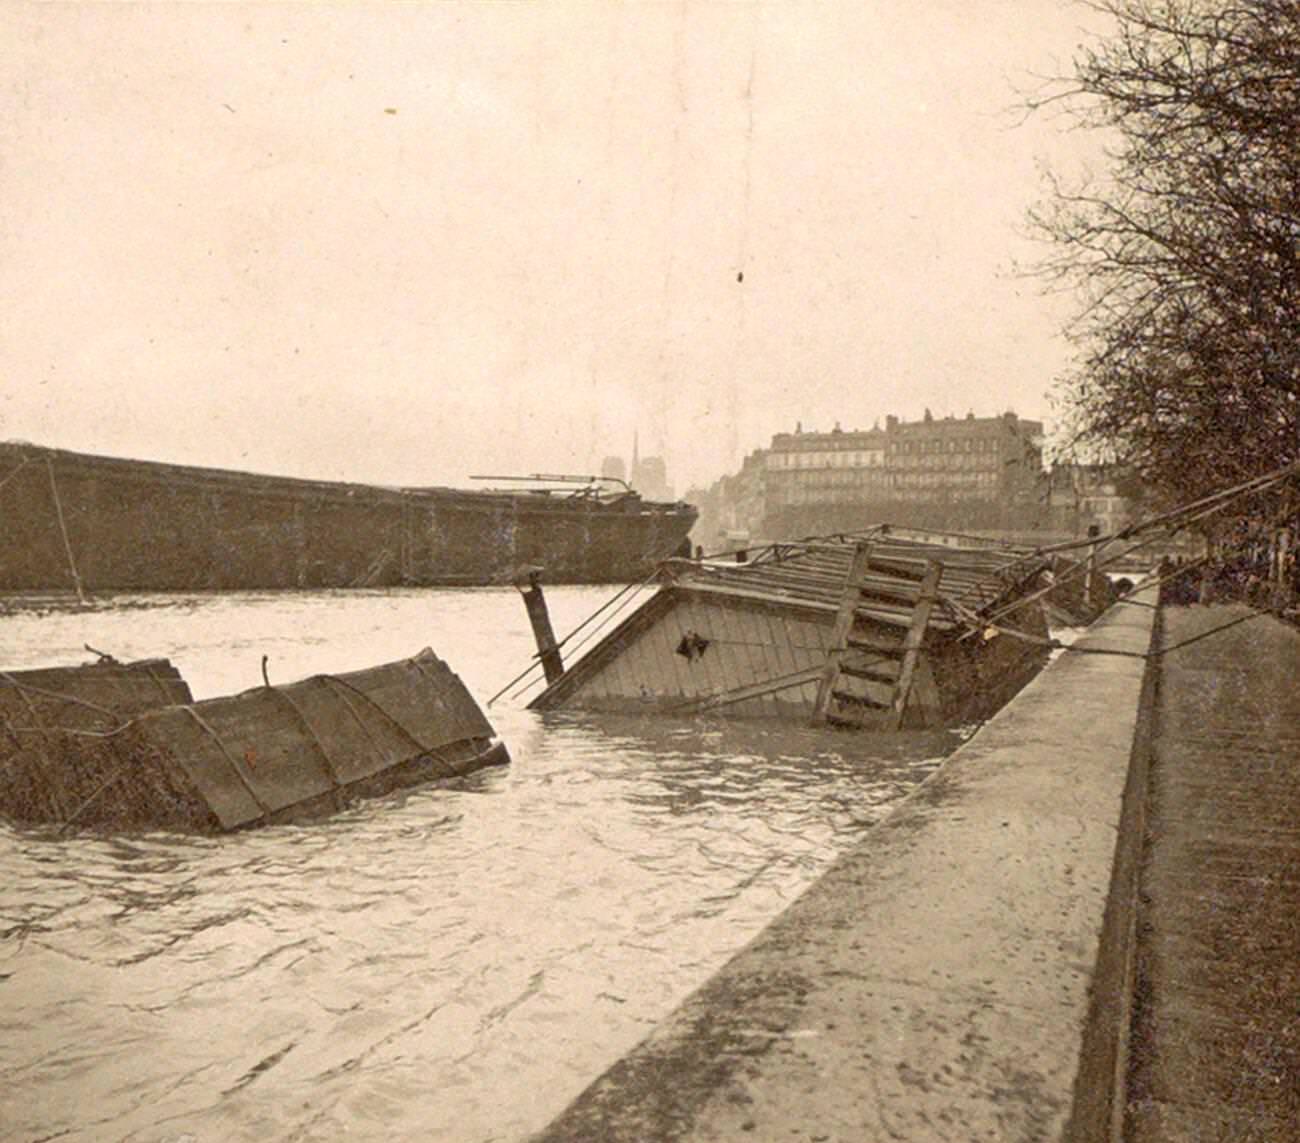 Sunken boat on the Seine River during Paris flood, 1910.